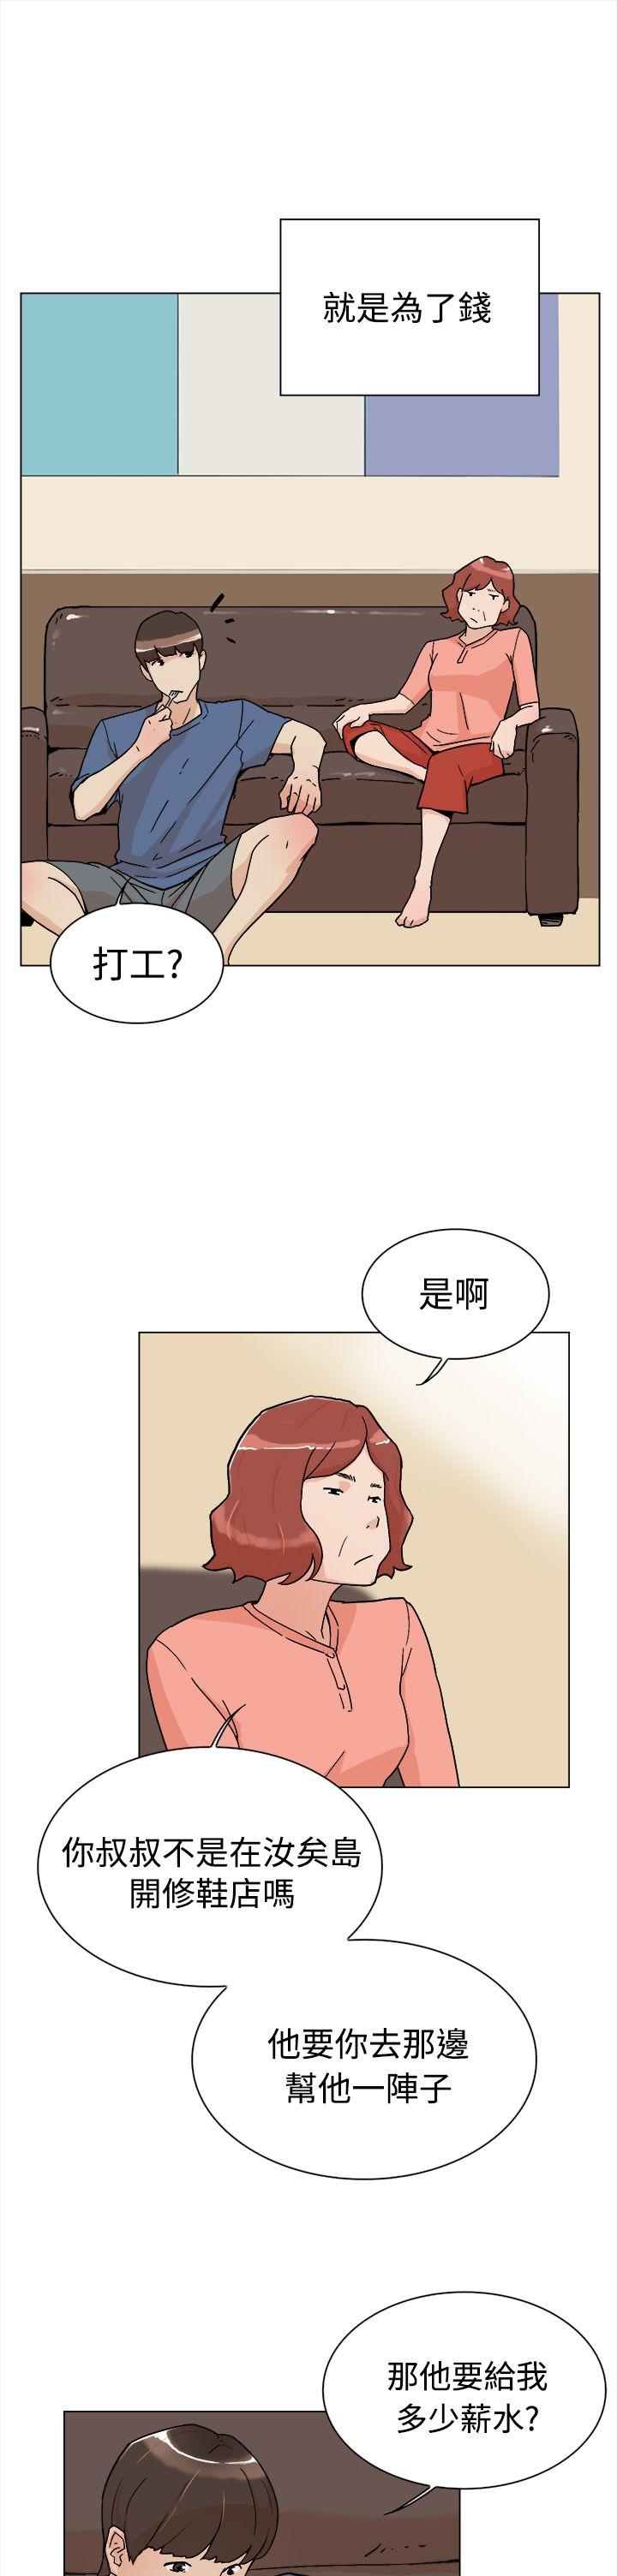 韩国污漫画 她的高跟鞋(無刪減) 第1话 10